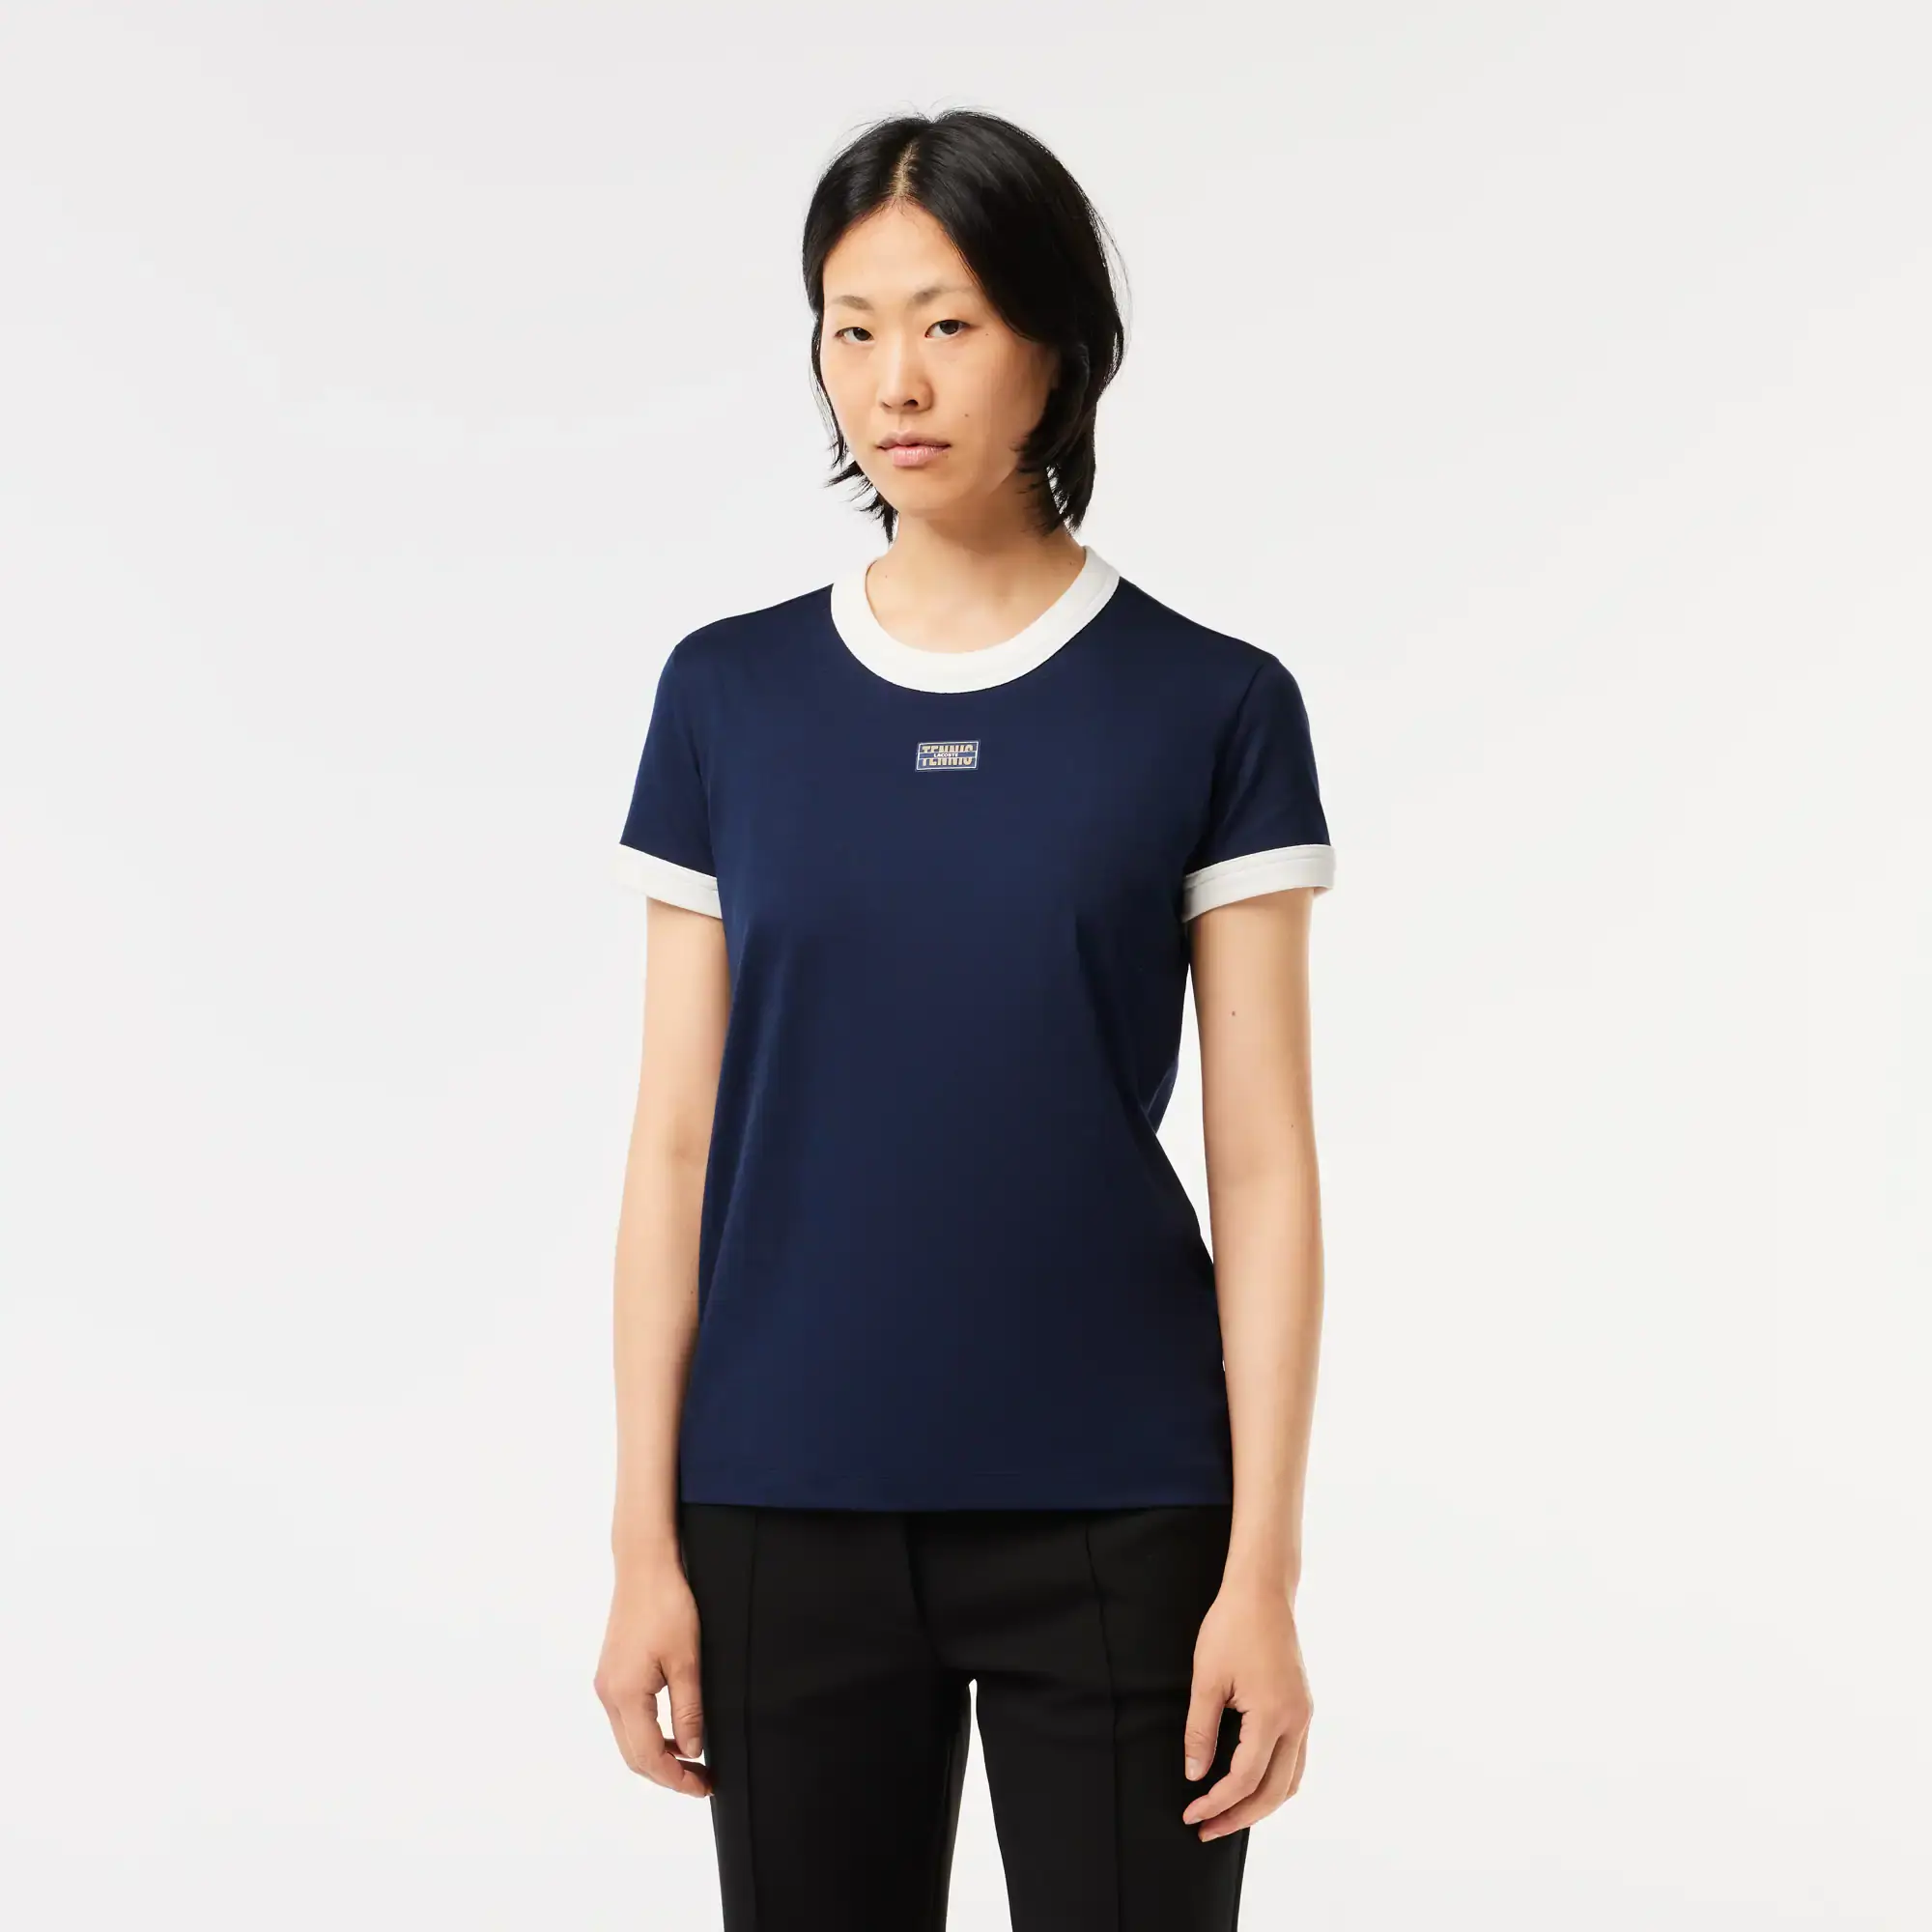 Lacoste Women's Slim Fit Cotton Tennis T-Shirt. 1